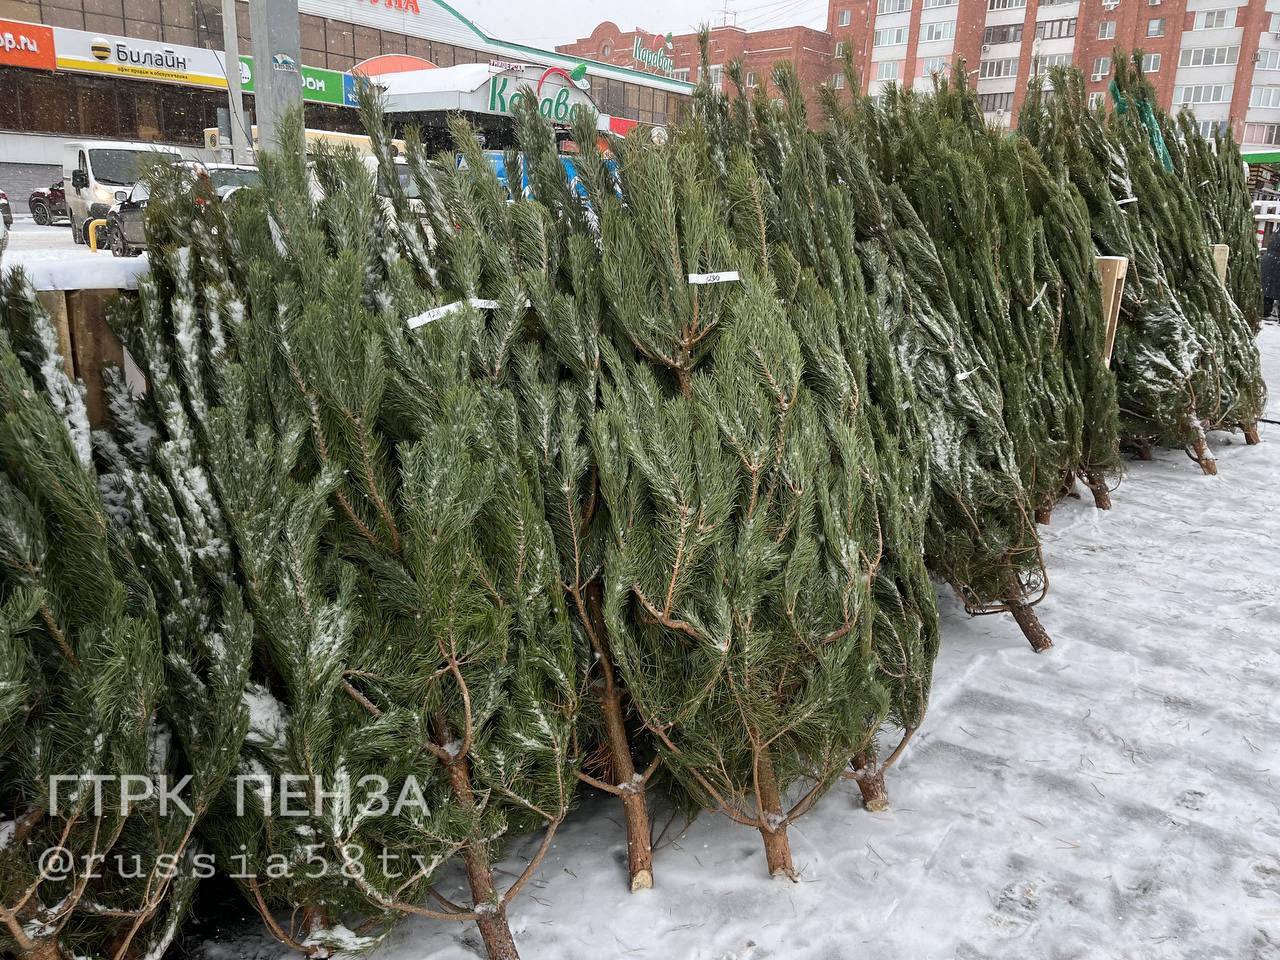 Пензенцам рассказали, на каких елочных базарах из 77, можно купить новогоднее дерево со скидкой 